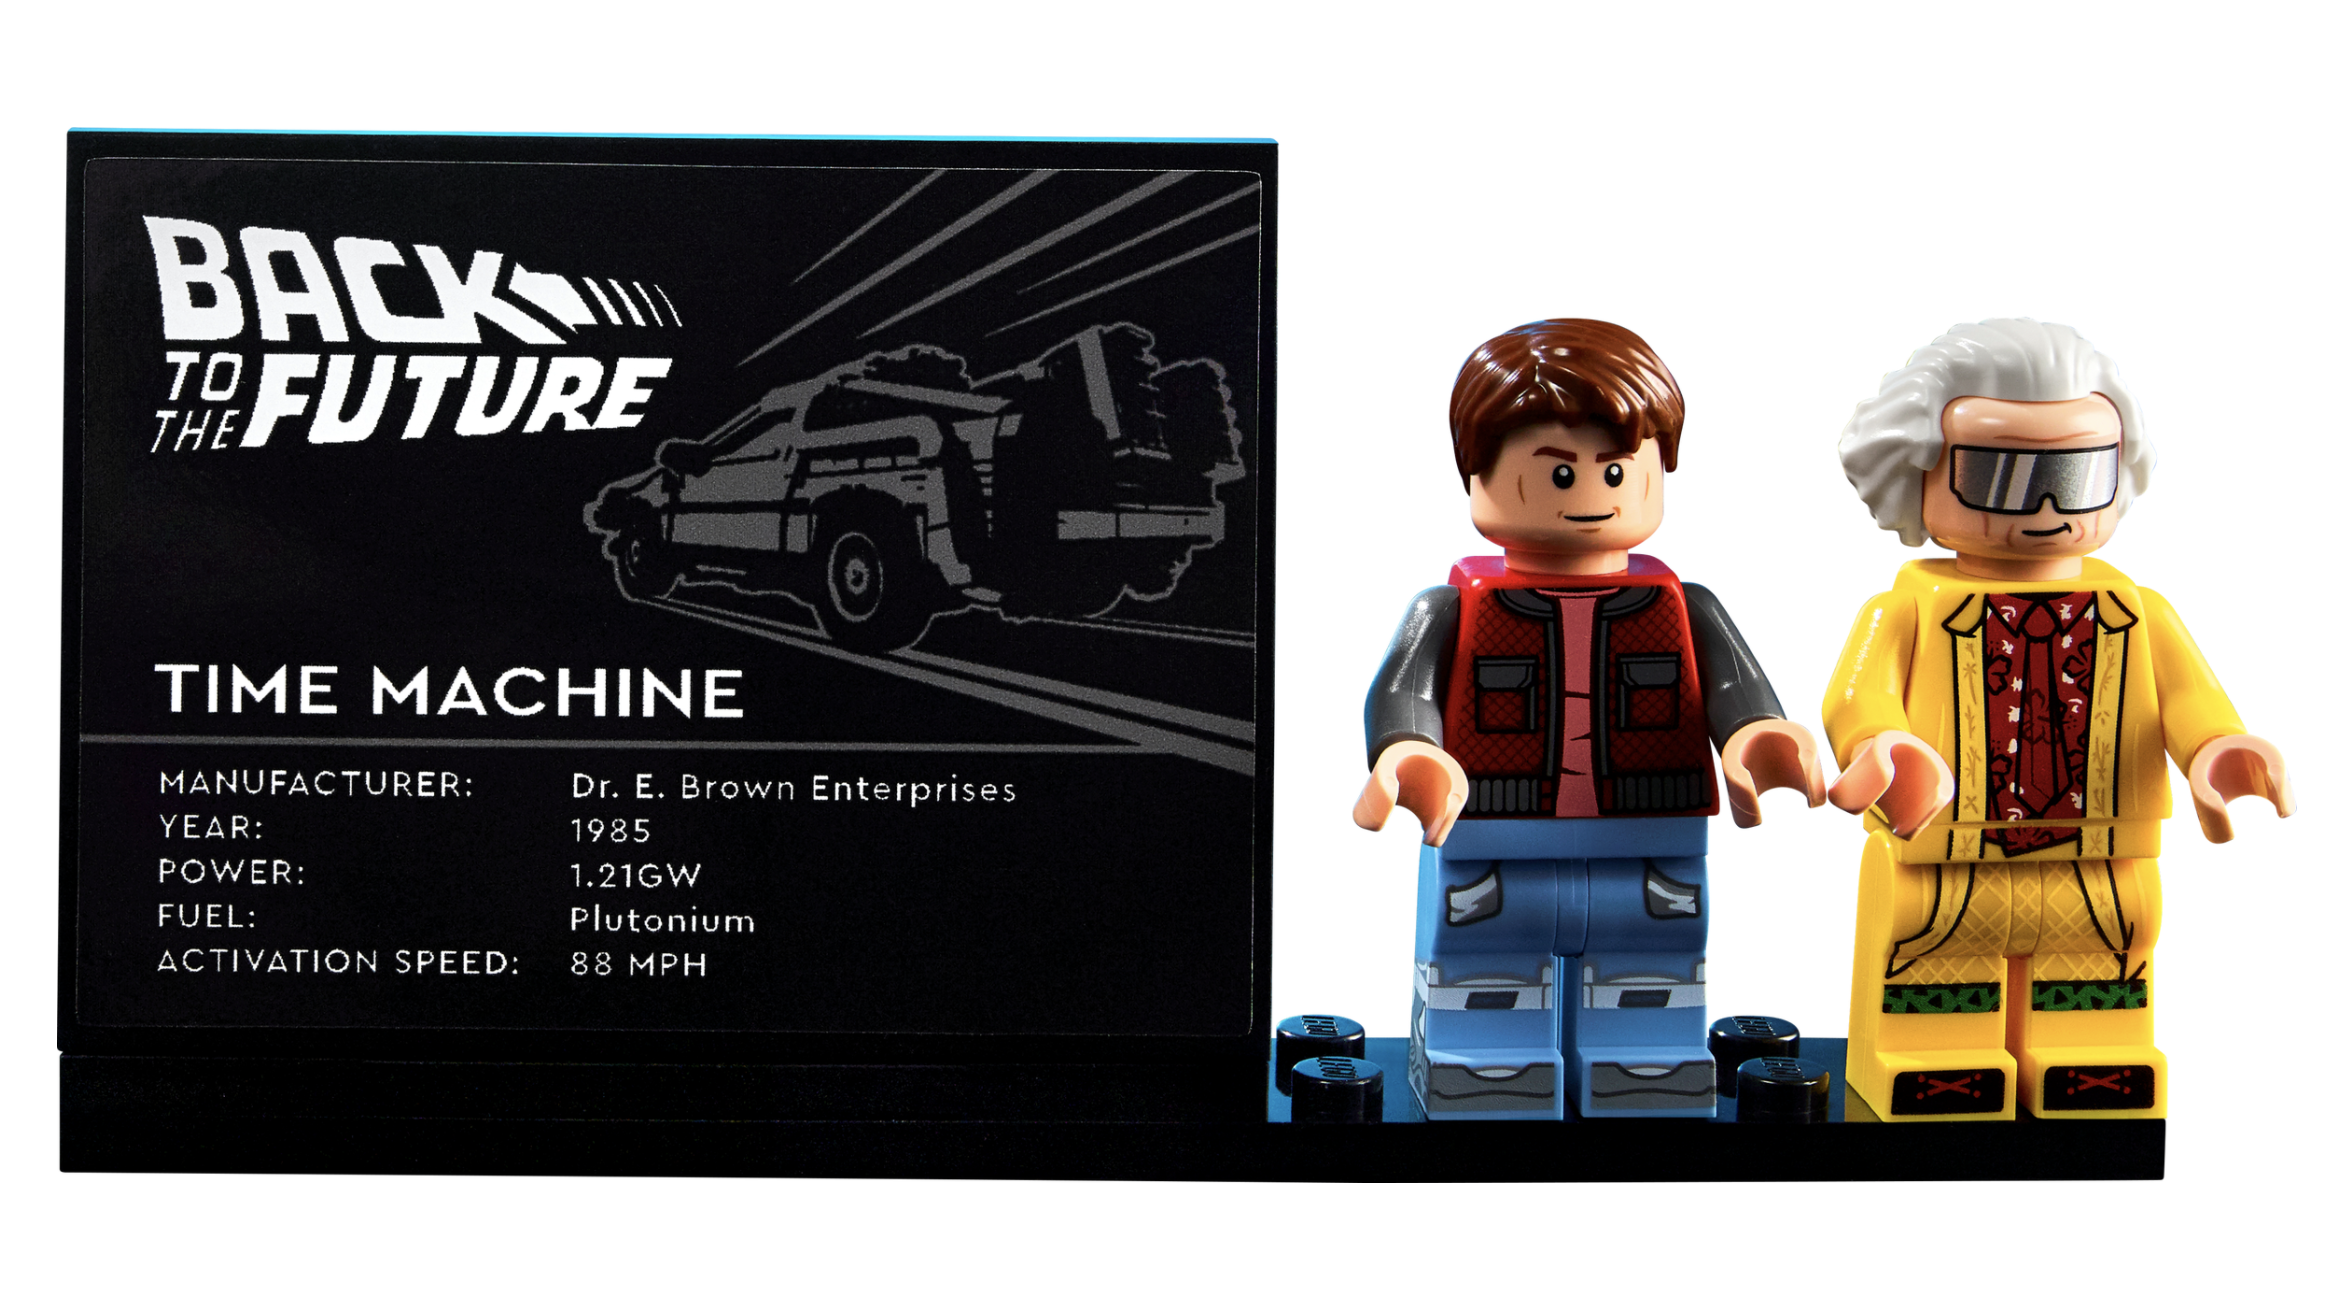 Lego to Release New, Bigger 'Back to the Future' DeLorean Set